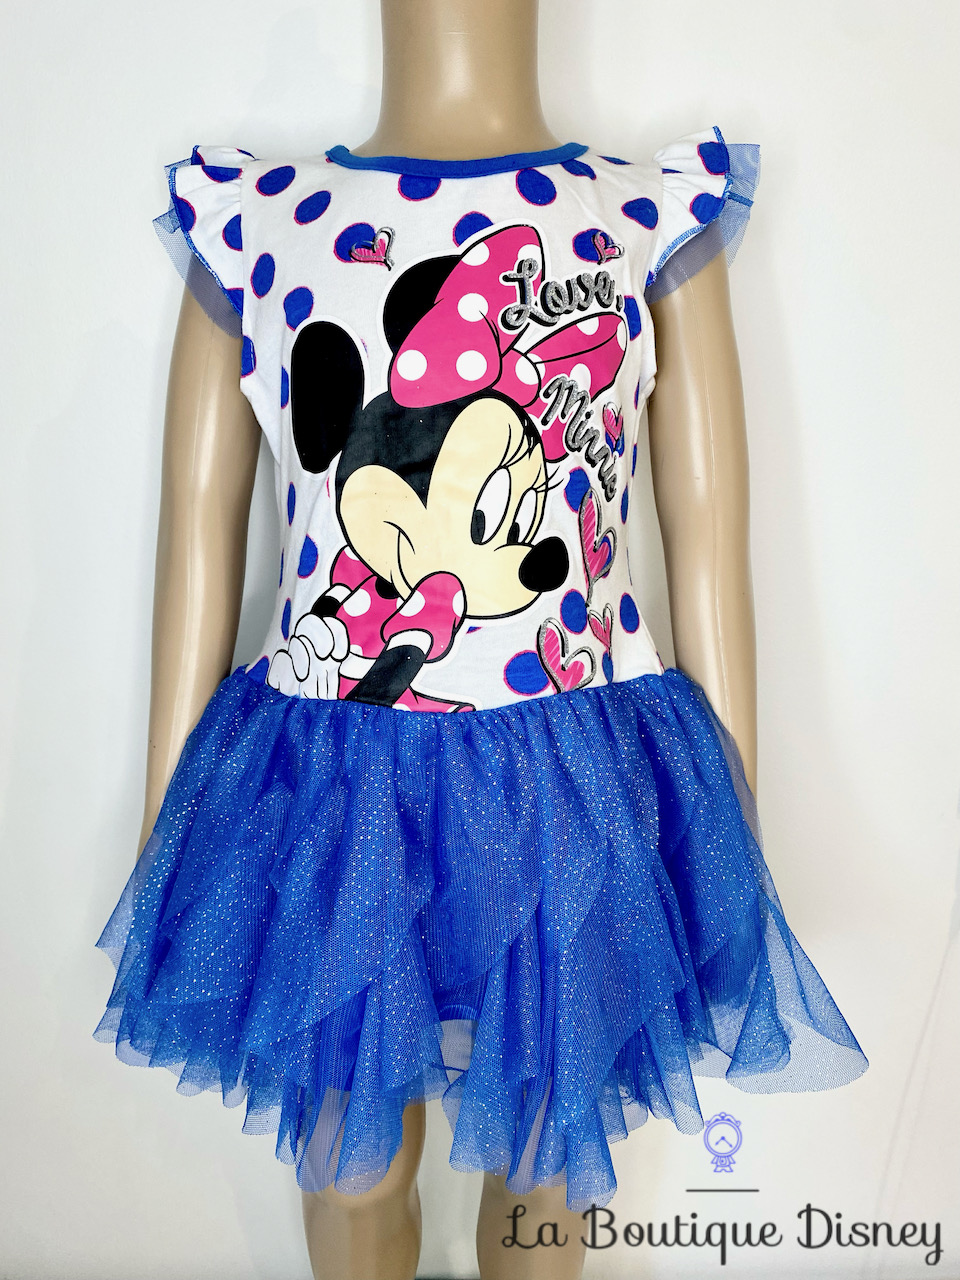 Robe Minnie Mouse Disney taille 6 ans tutu voile bleu blanc pois Love Minnie